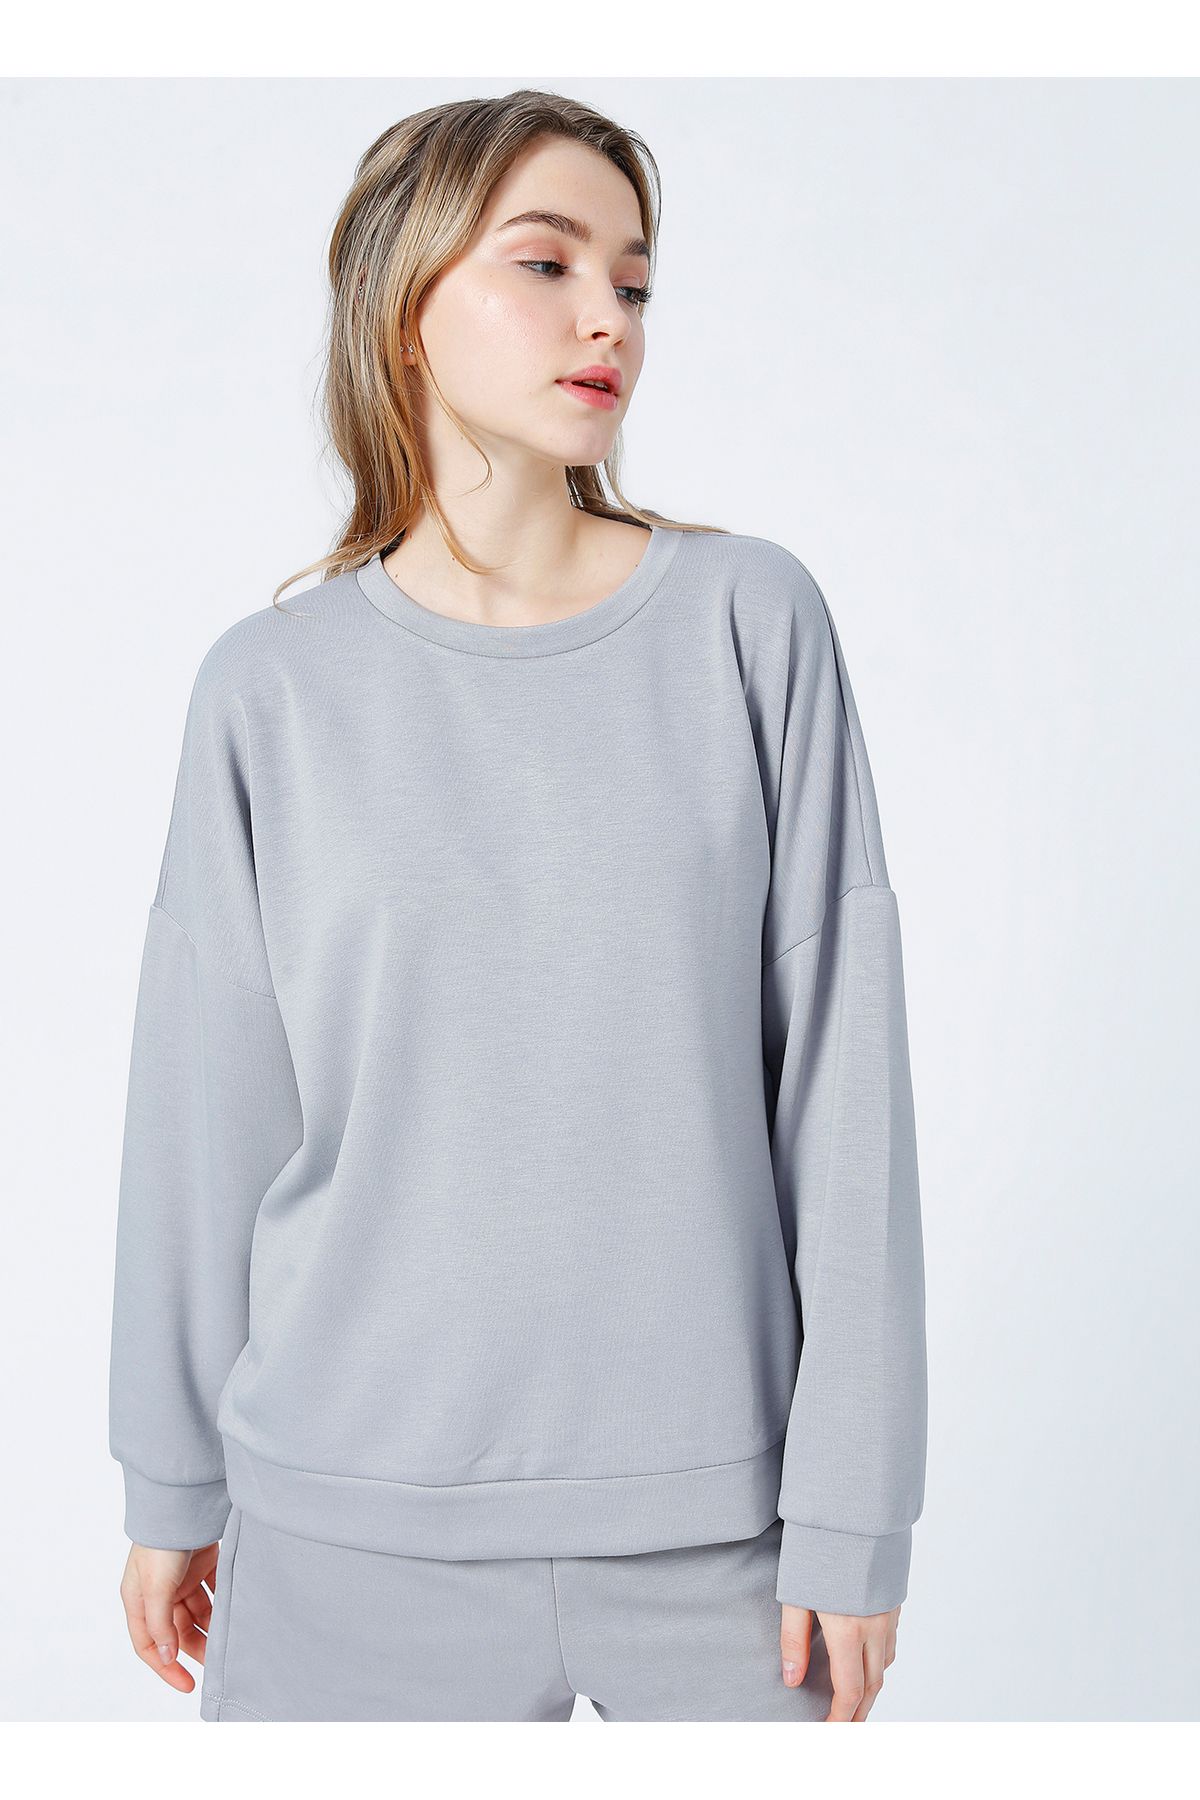 Fabrika Homewear Koleksiyonu Gri Kadın Sweatshirt